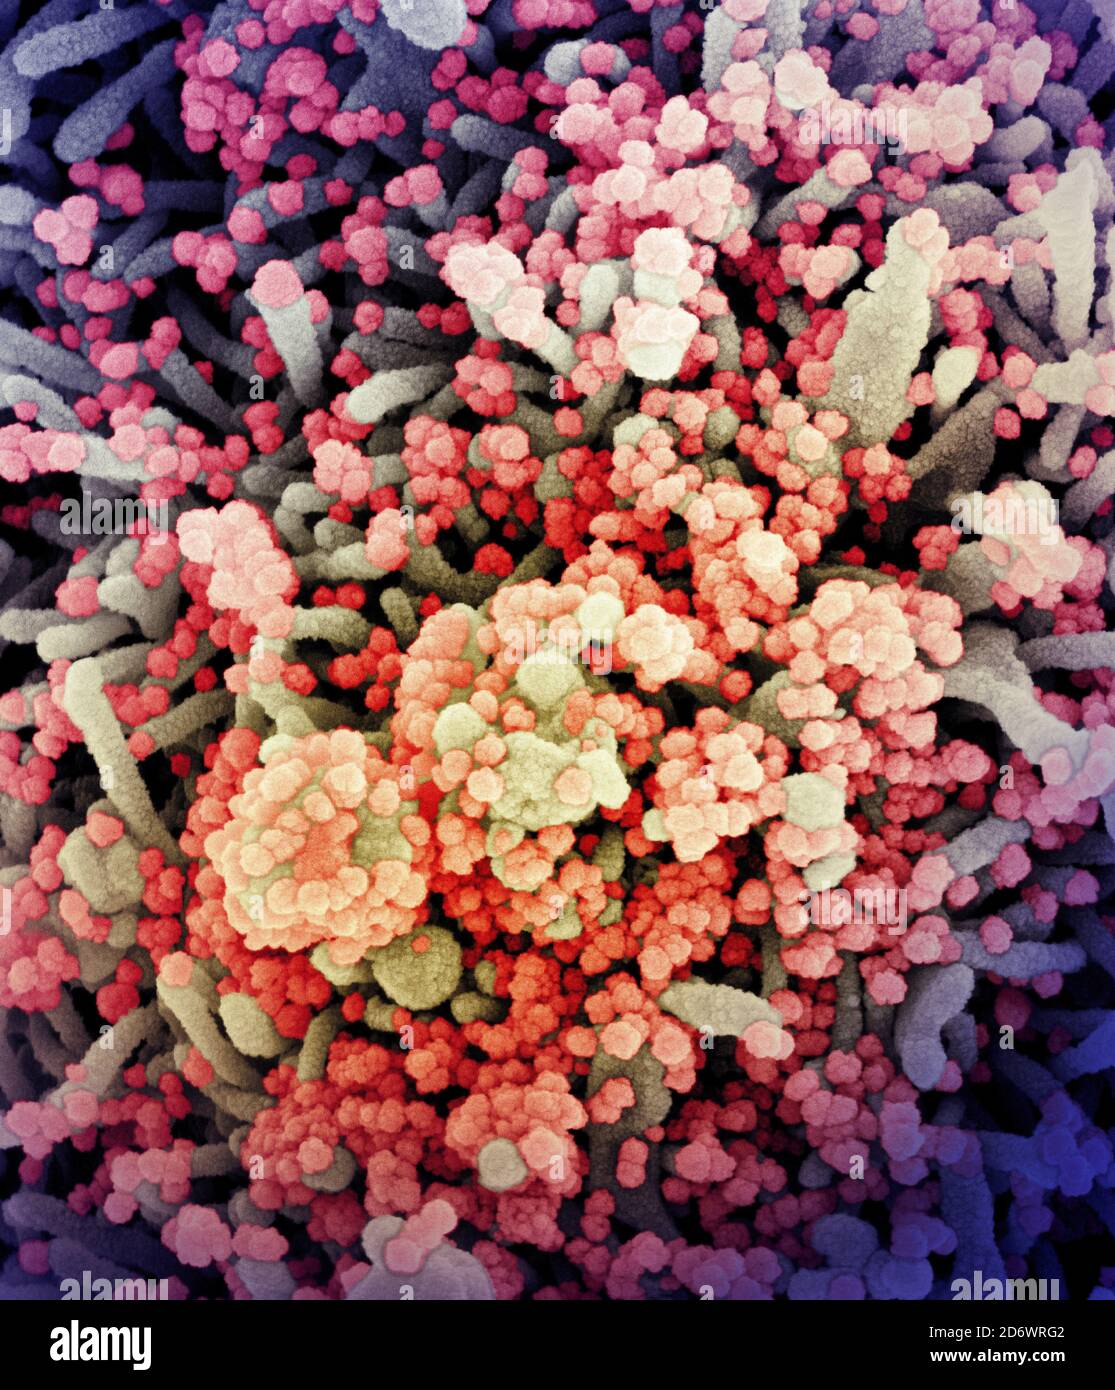 Micrografia elettronica a scansione colorata di una cellula fortemente infettata con particelle di virus SARS-COV-2 (arancione/rosso), isolata da un campione di paziente. Immagine Foto Stock